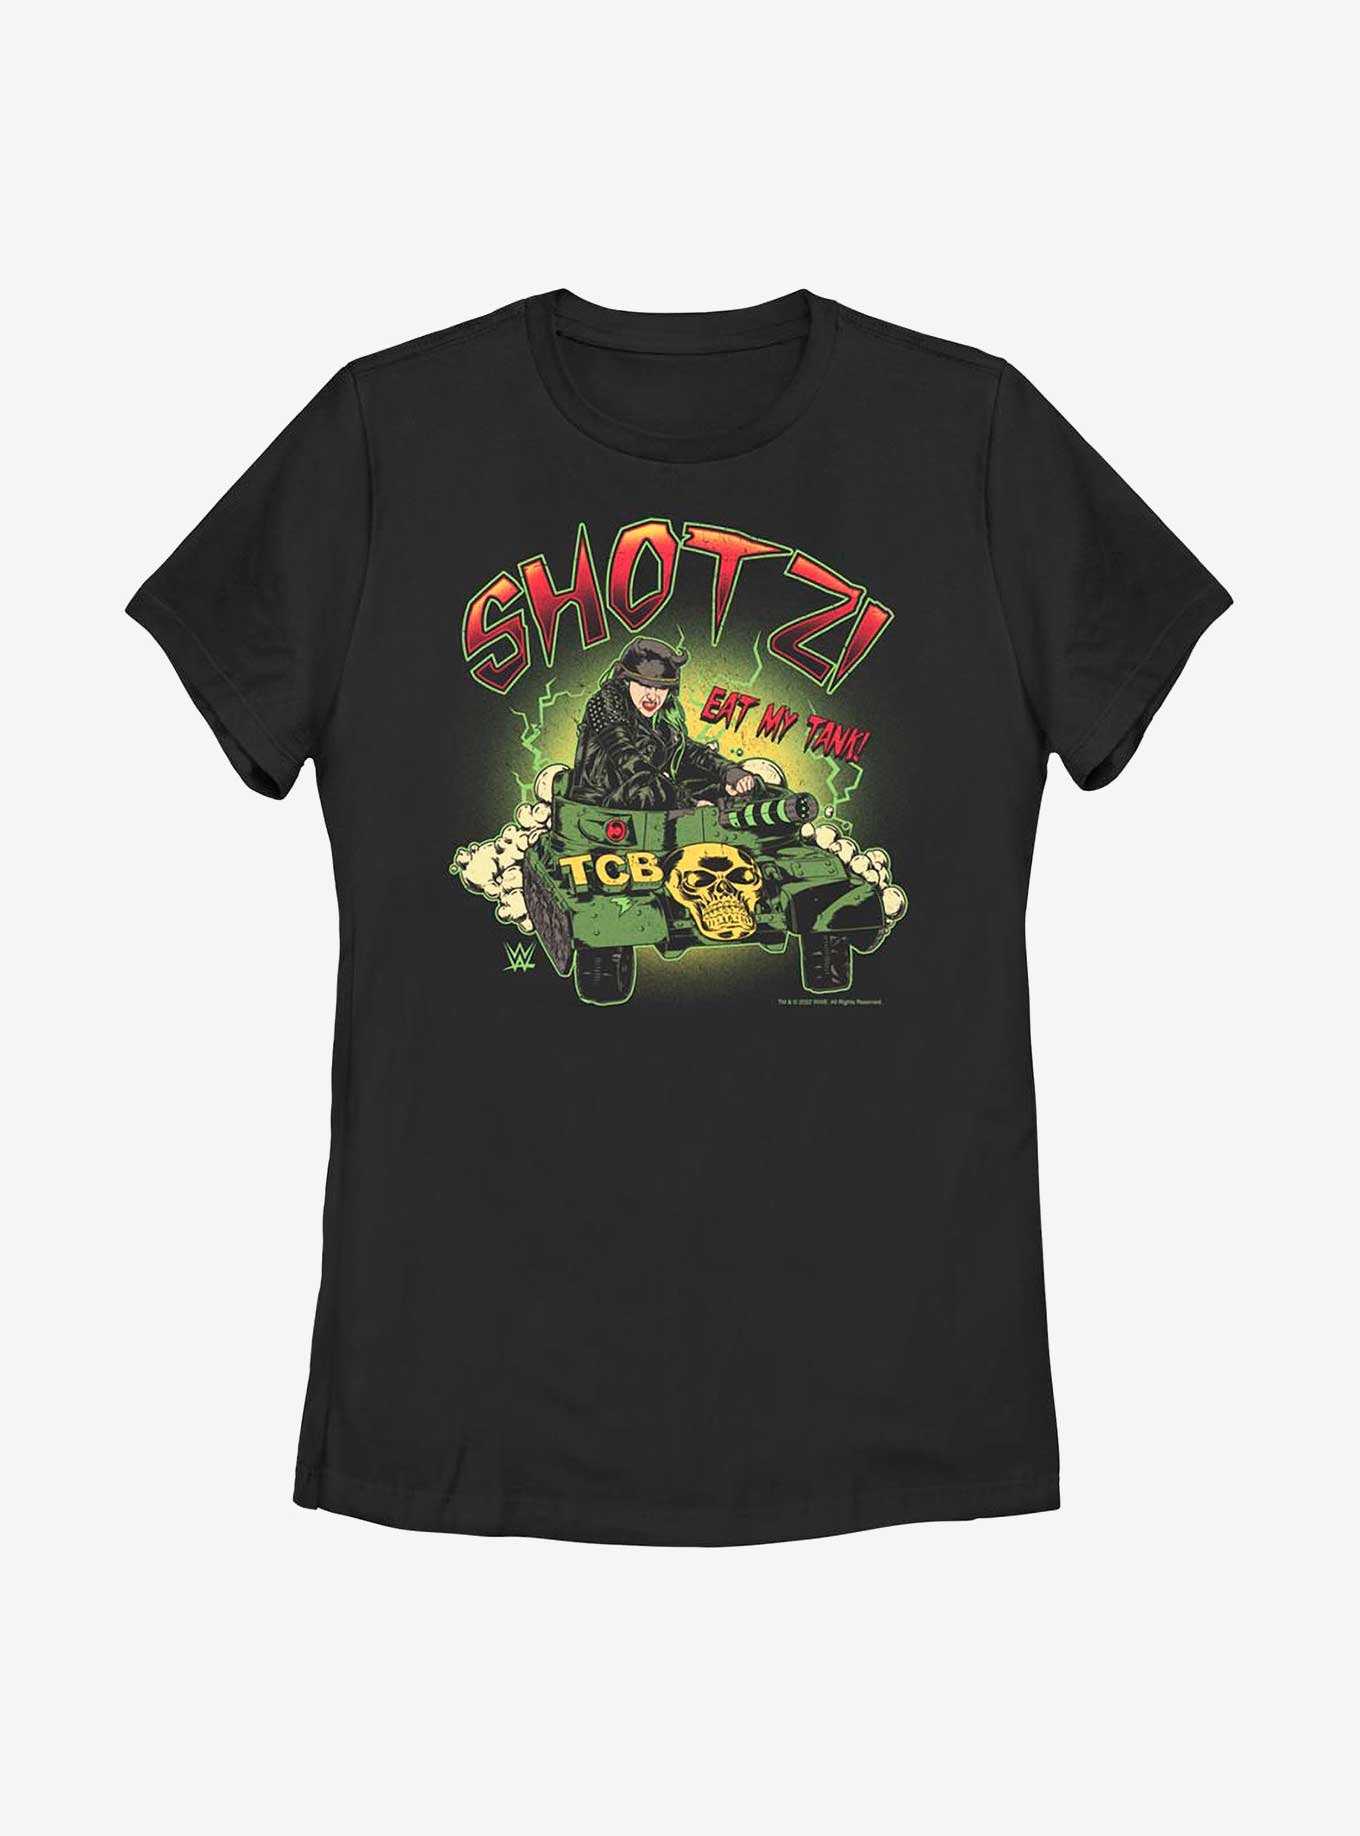 WWE Shotzi Eat My Tank! Womens T-Shirt, , hi-res